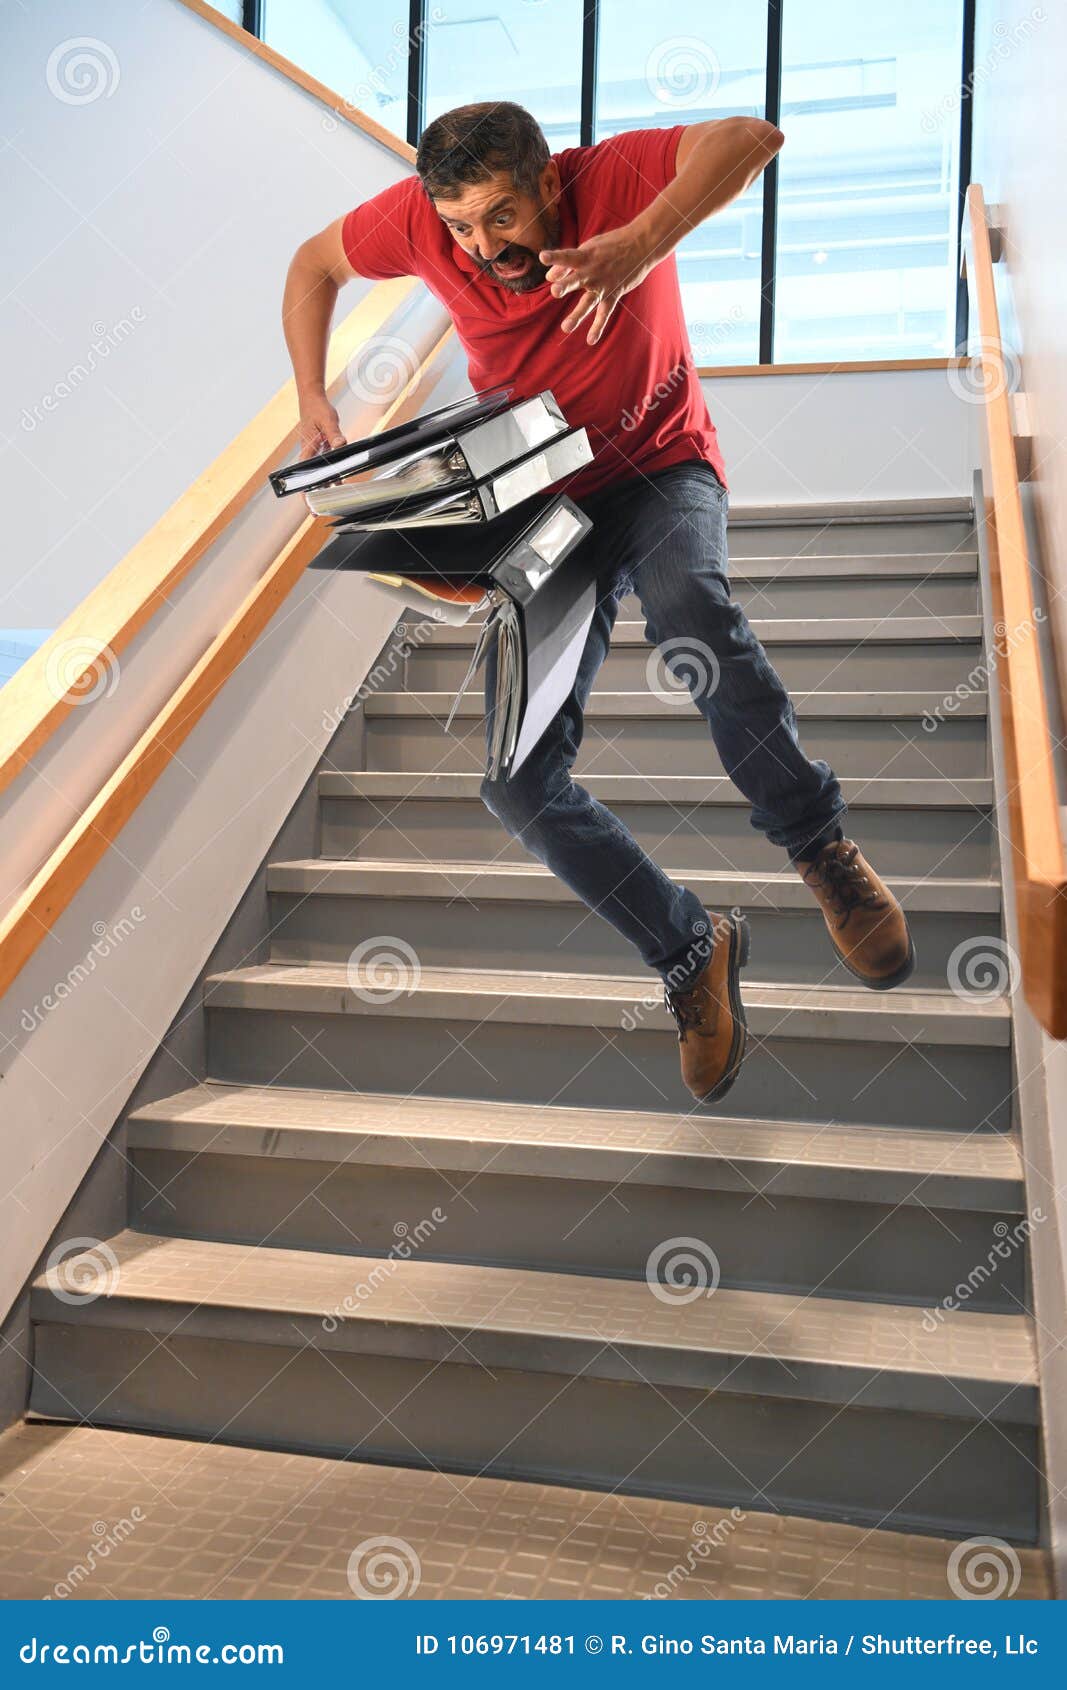 К чему споткнуться на левую ногу. Человек на лестнице. Человек спускается с лестницы. Человек на ступеньках. Спуск с лестницы.